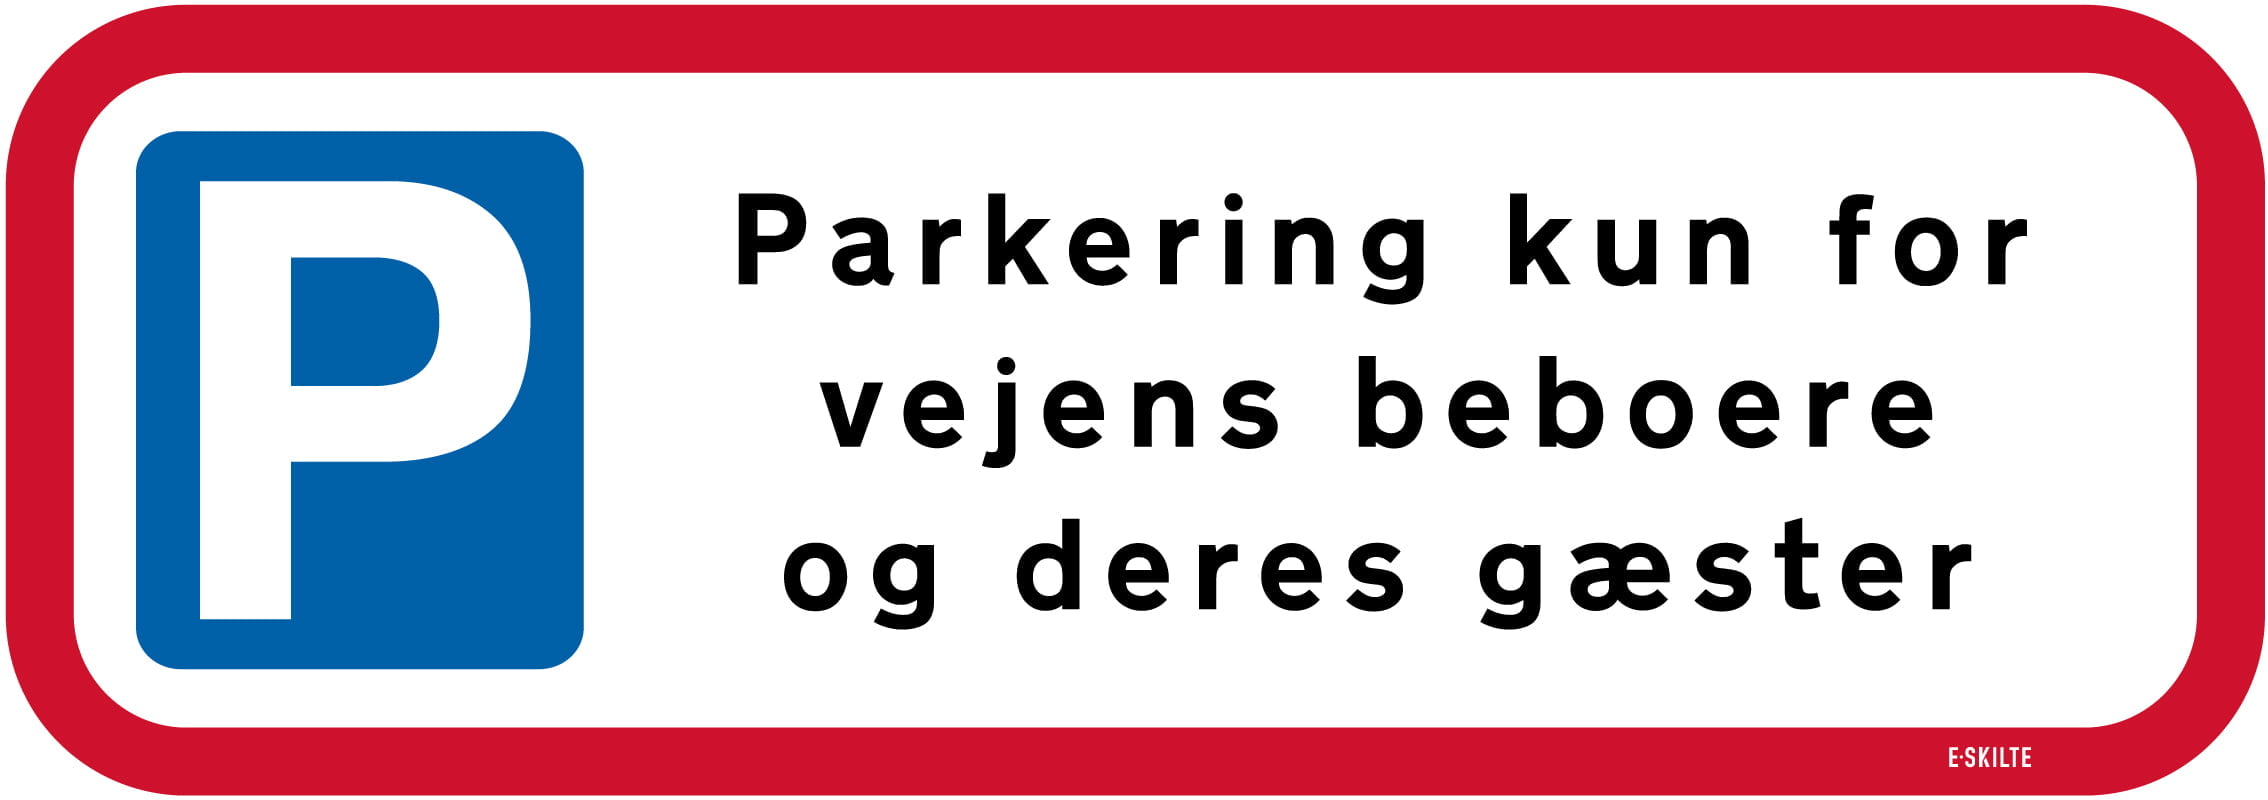 Parkering kun for vejens beboere og deres gæster